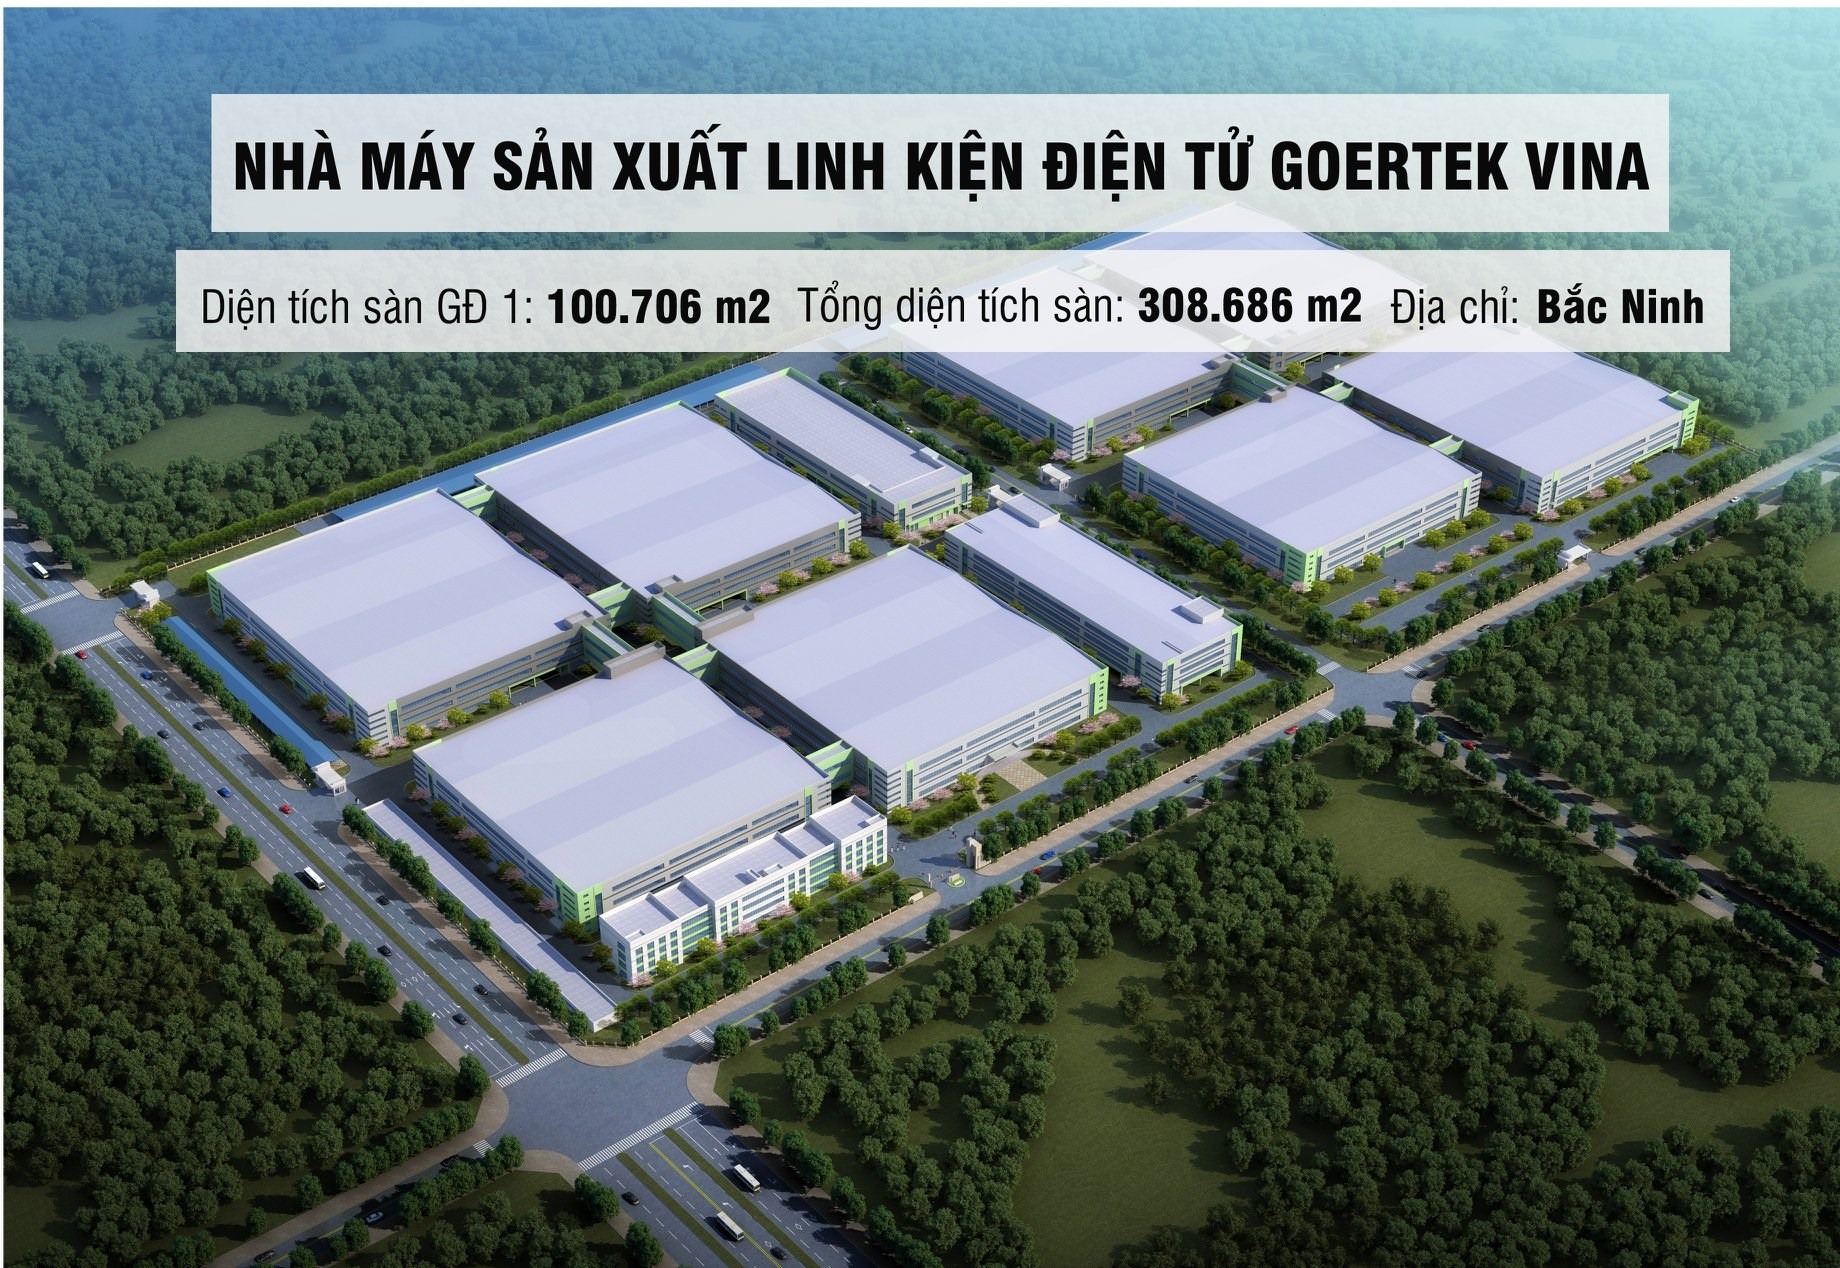 Nhà máy sản xuất linh kiện điện tử GOERTEK VINA